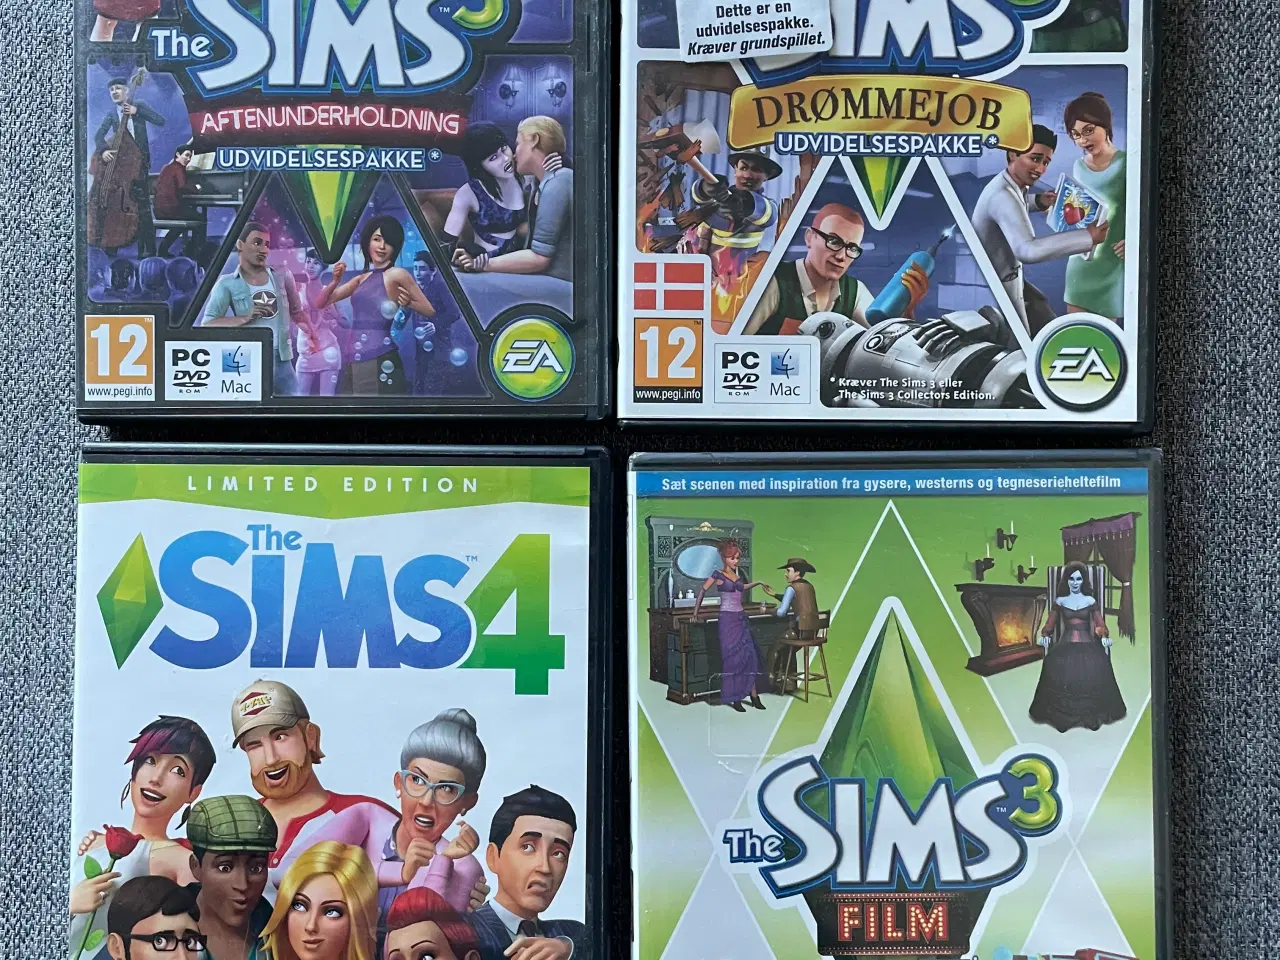 Billede 1 - 3 stk. The Sims 3 spil og 1. The Sims 4, rollespil